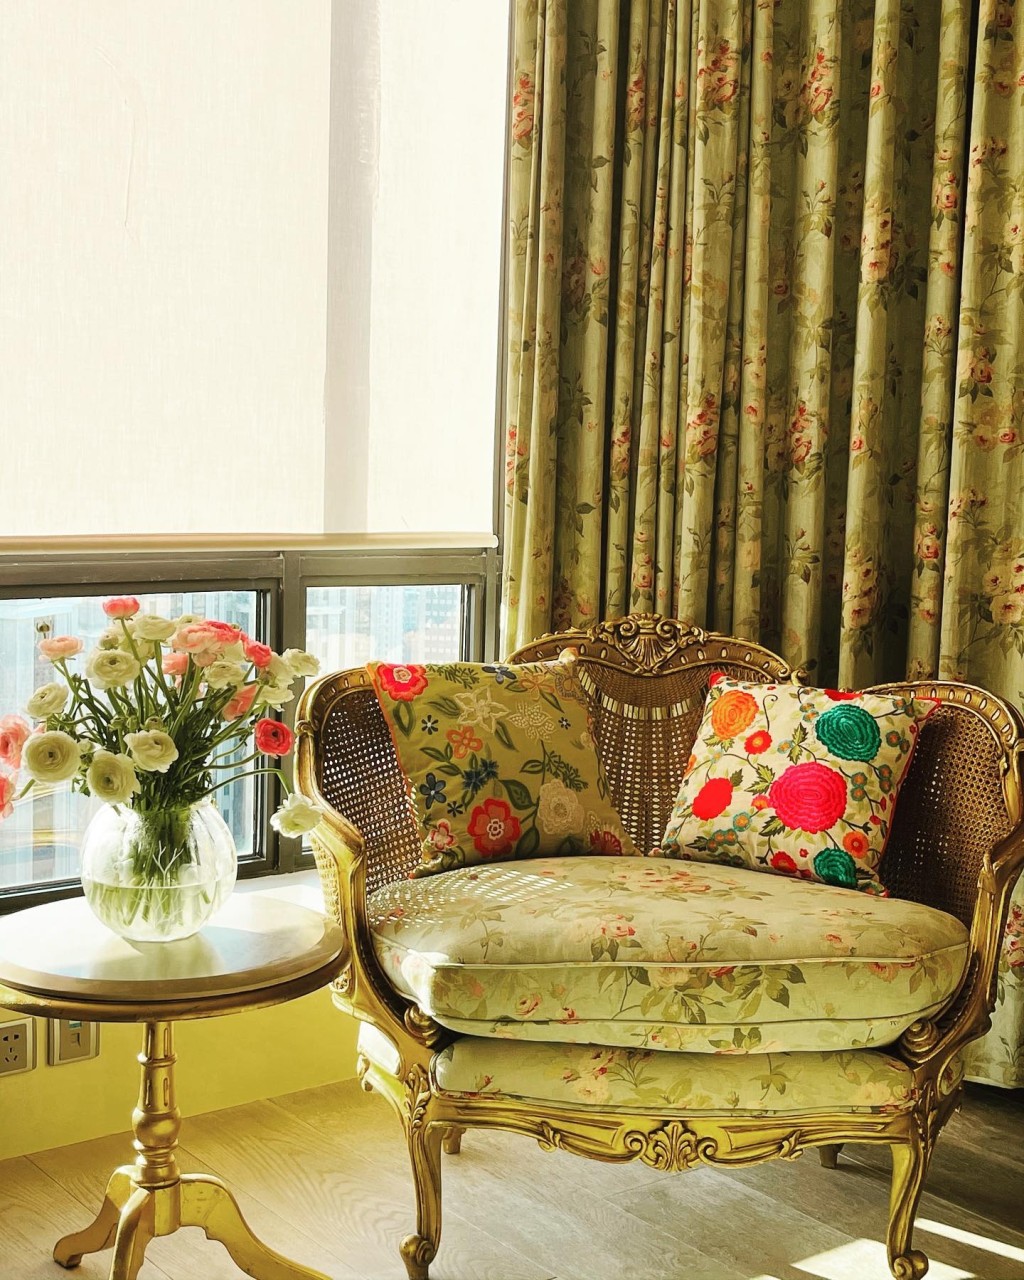 屋內布置與香港大宅一樣走奢華復古風格。